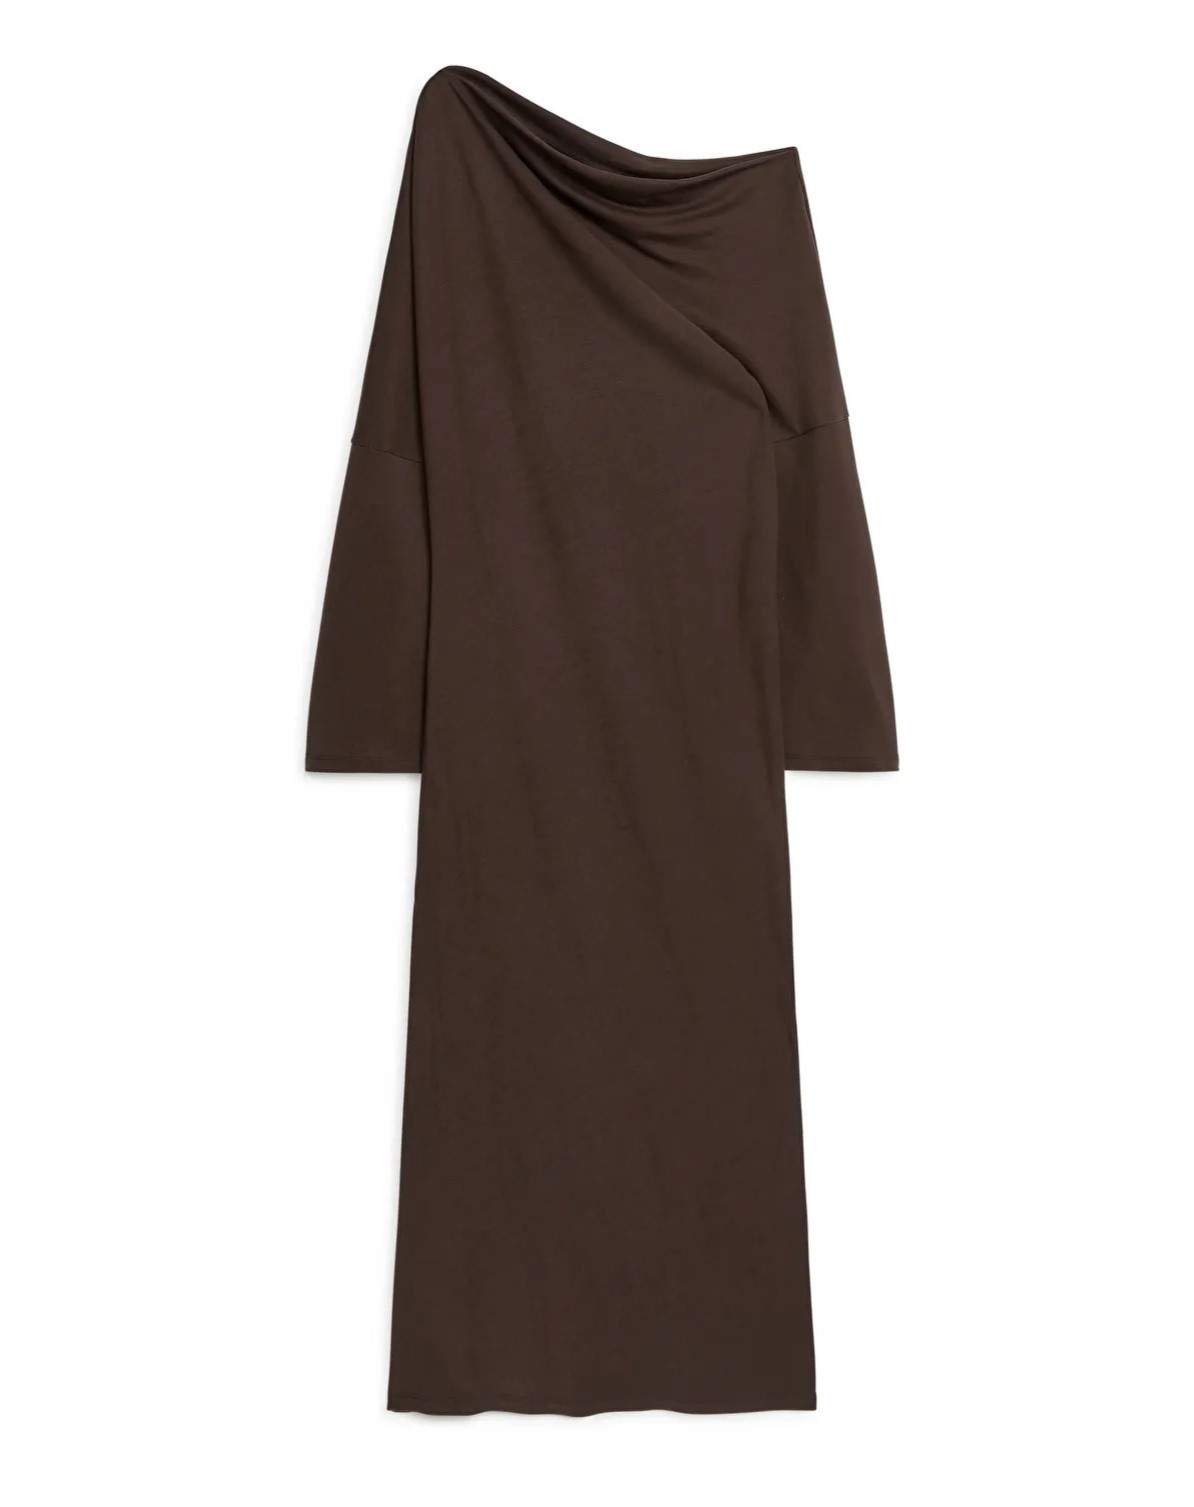 Vestido marrón de ARKET, para un look estilo lujo silencioso.